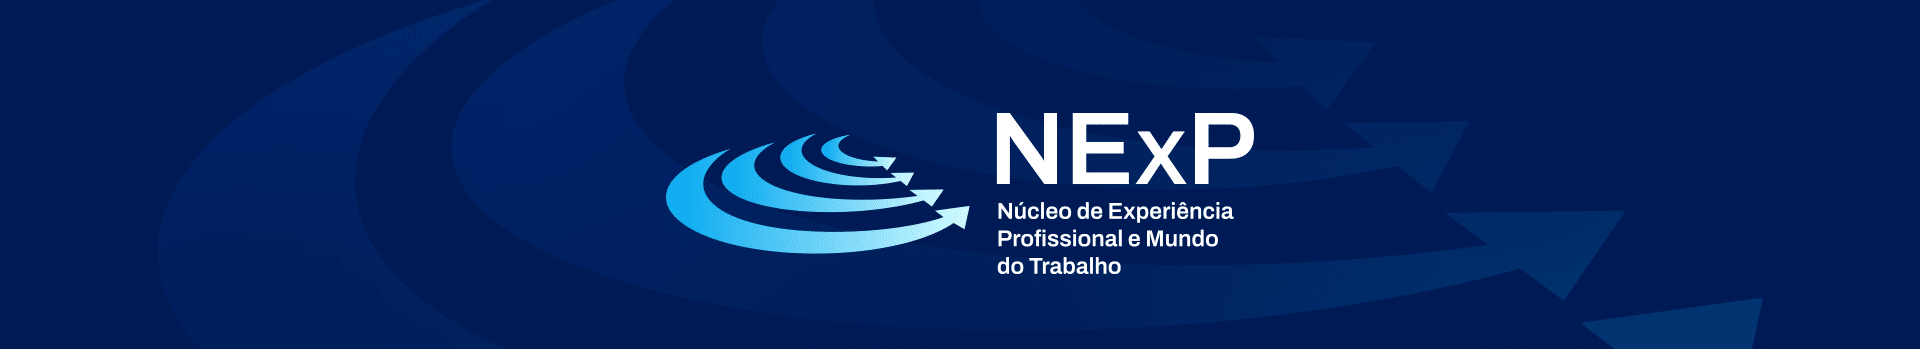 Banner Nexp Novo